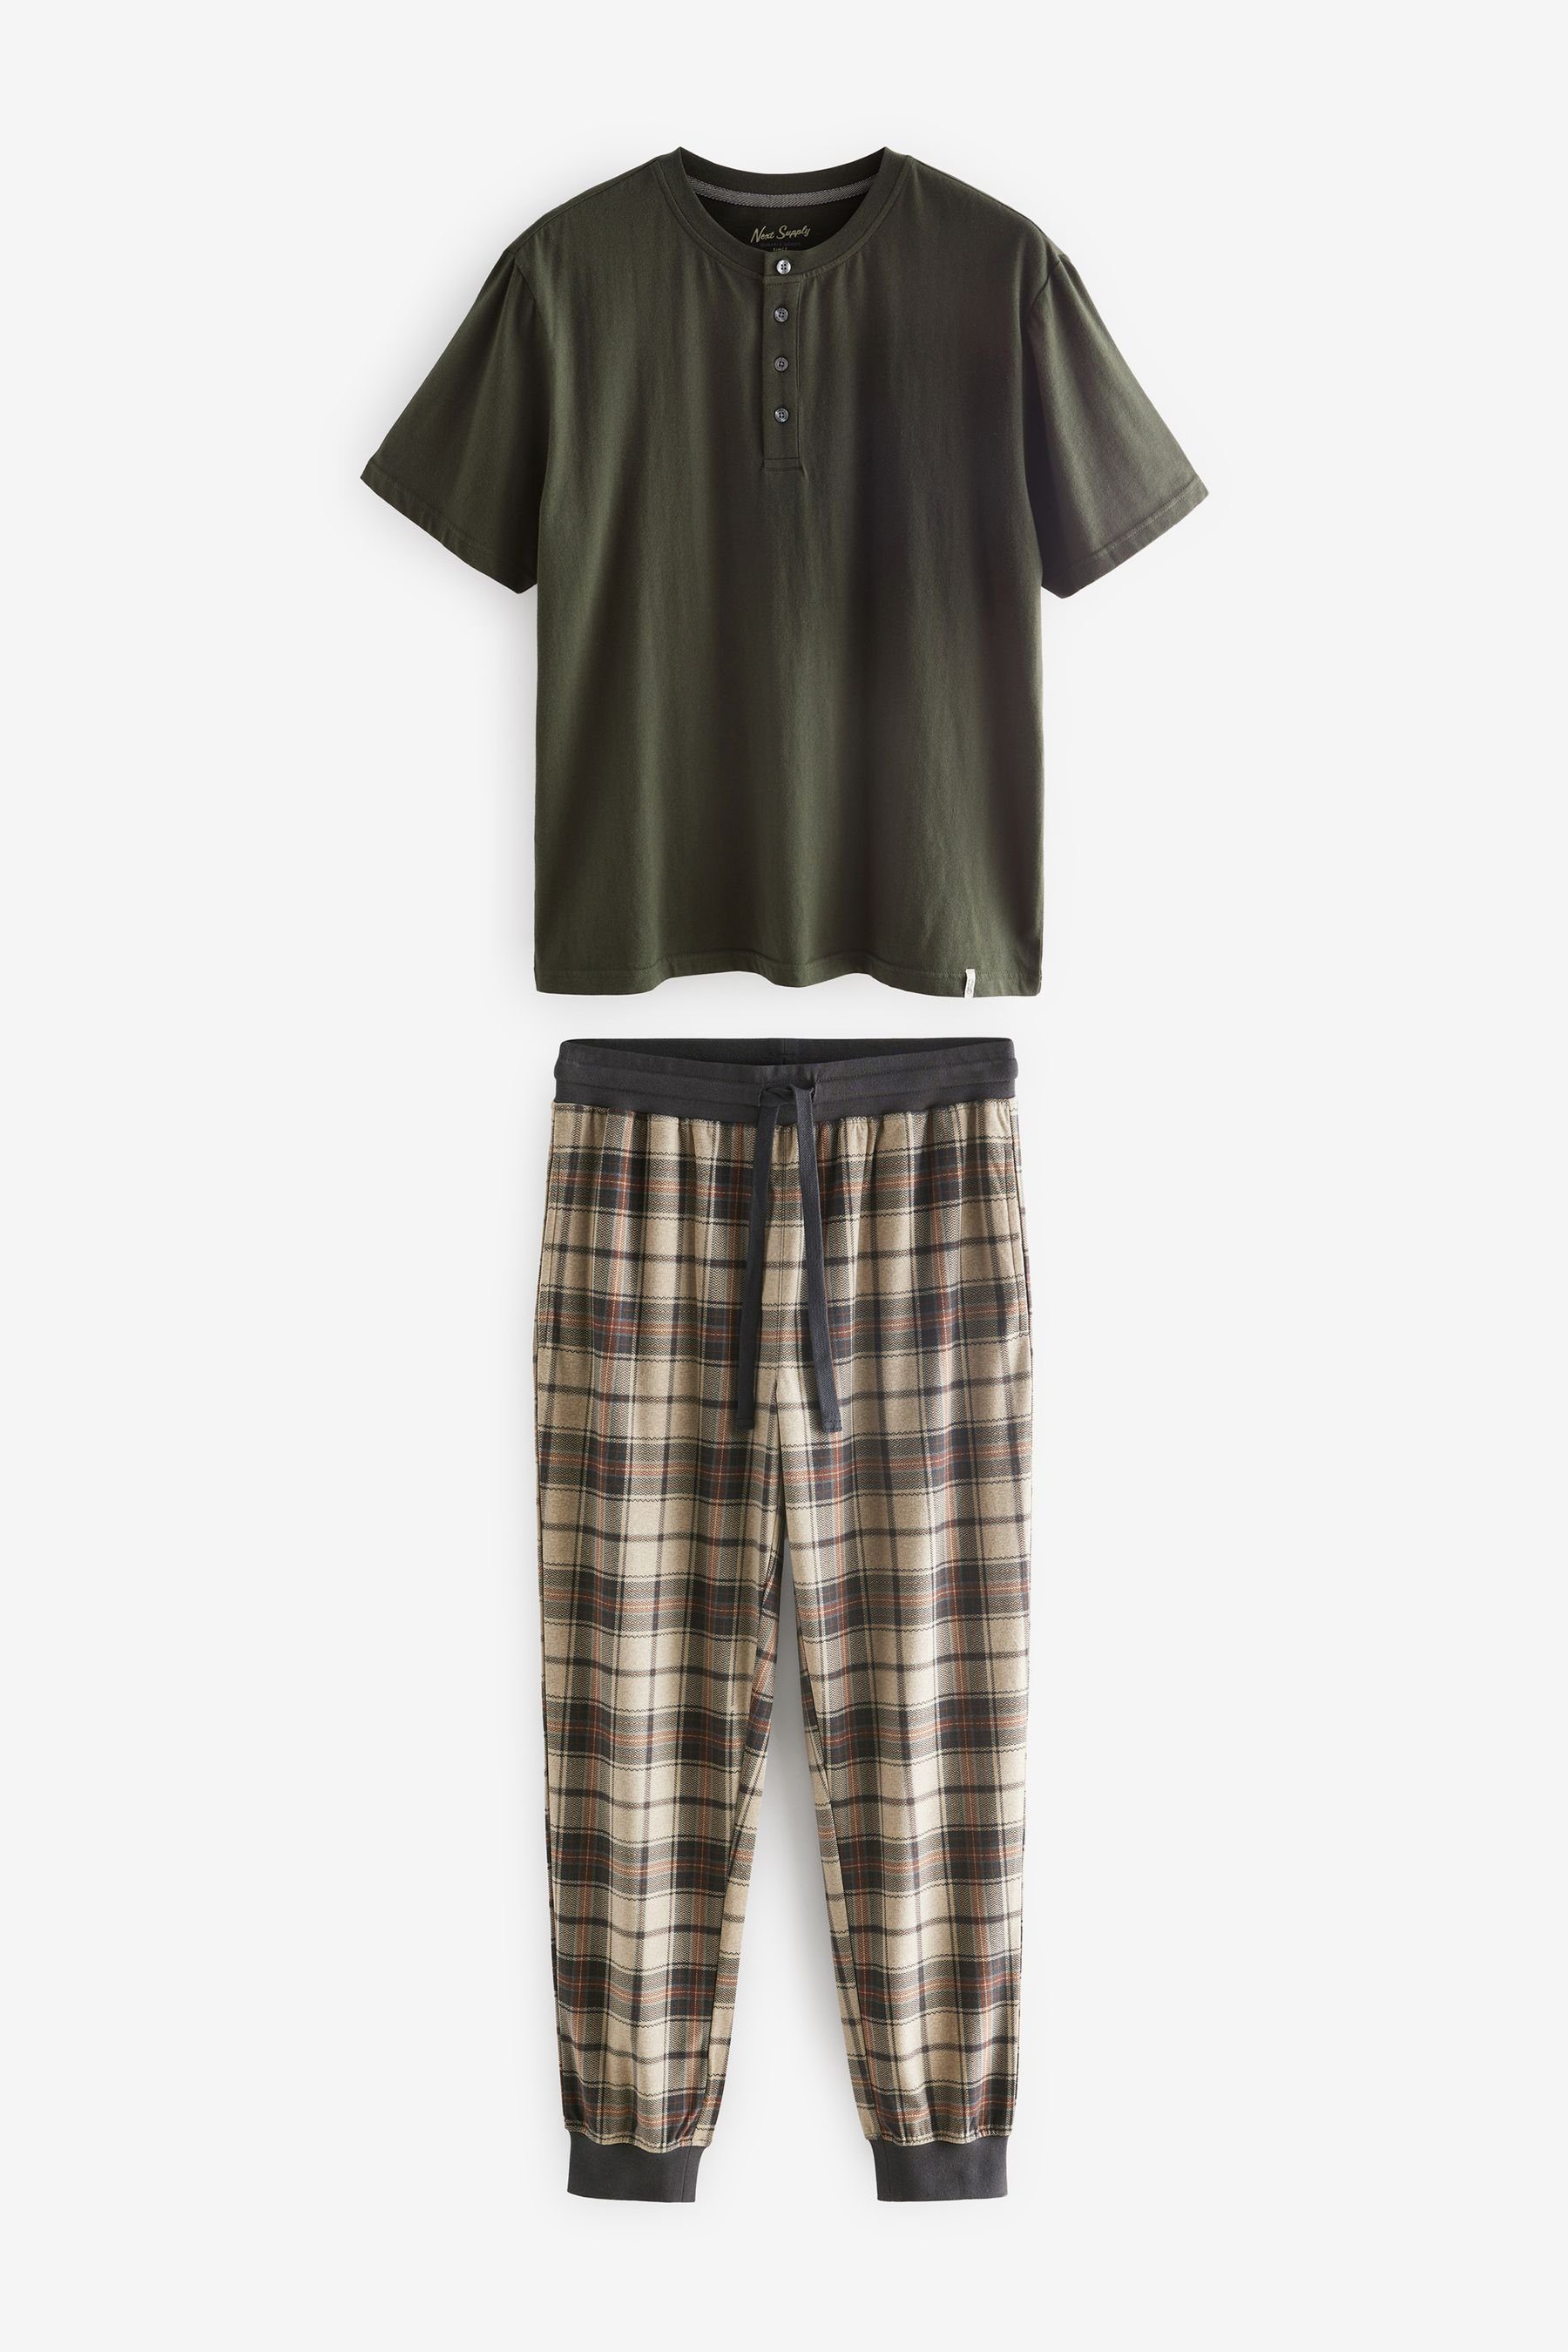 Next Pyjama MotionFlex Kuscheliger Schlafanzug mit Bündchen (2 tlg) Khaki Green/Neutral Check